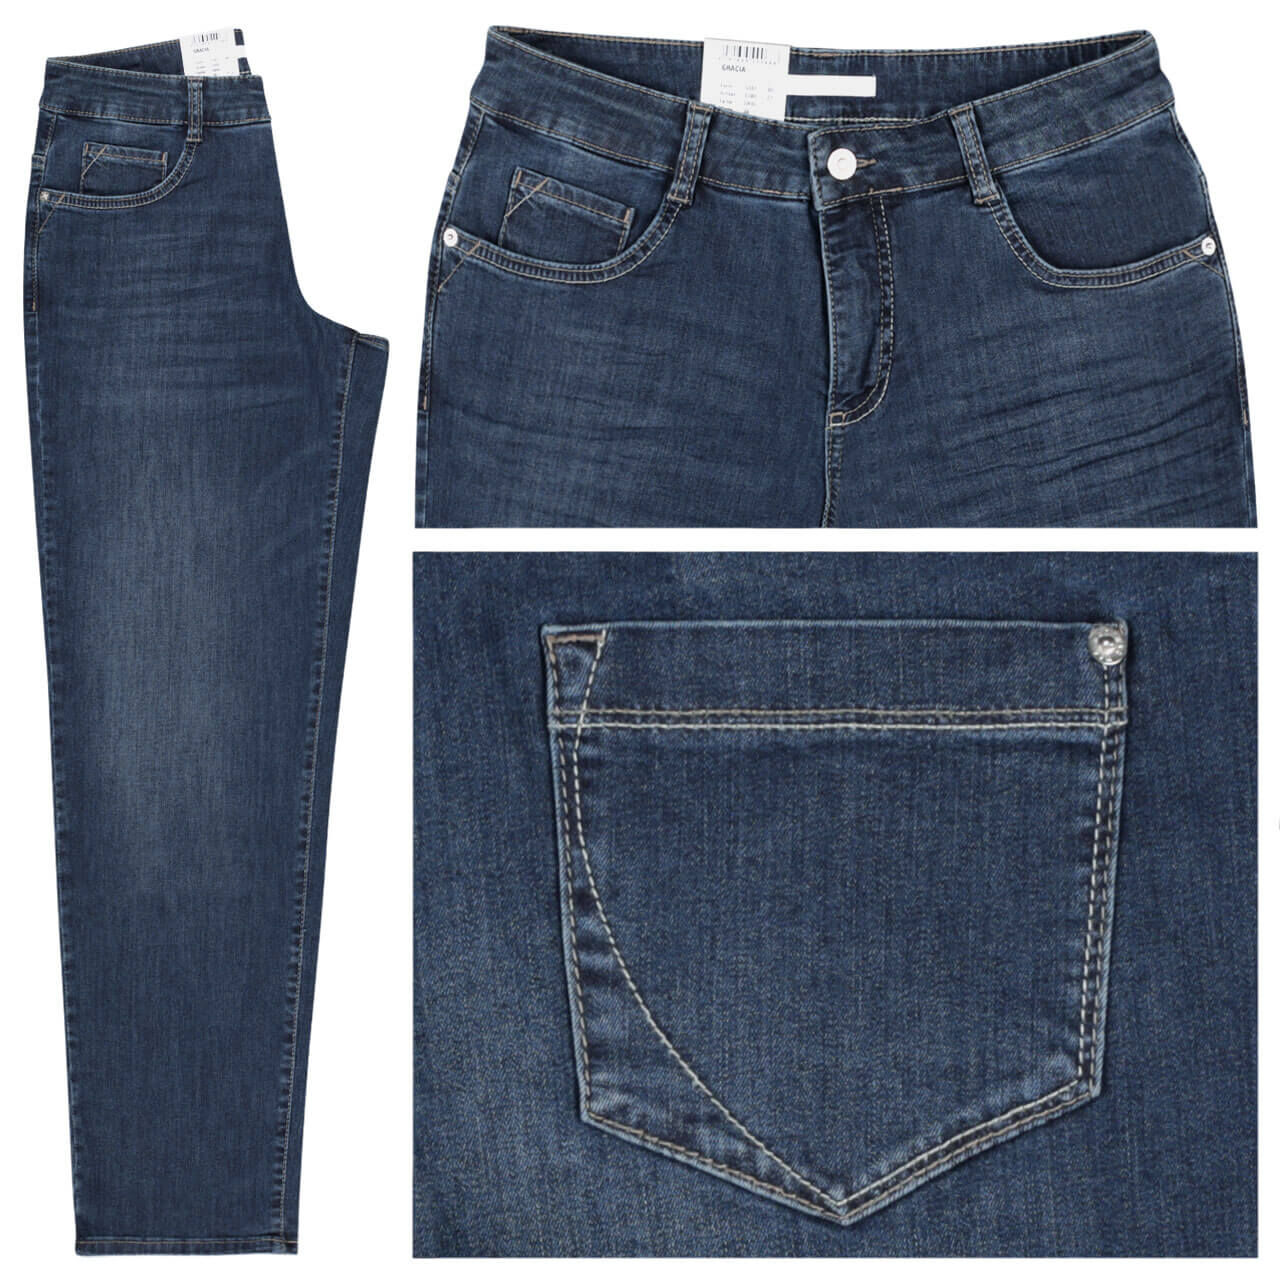 MAC Jeans Gracia für Damen in Dunkelblau verwaschen, FarbNr. D845